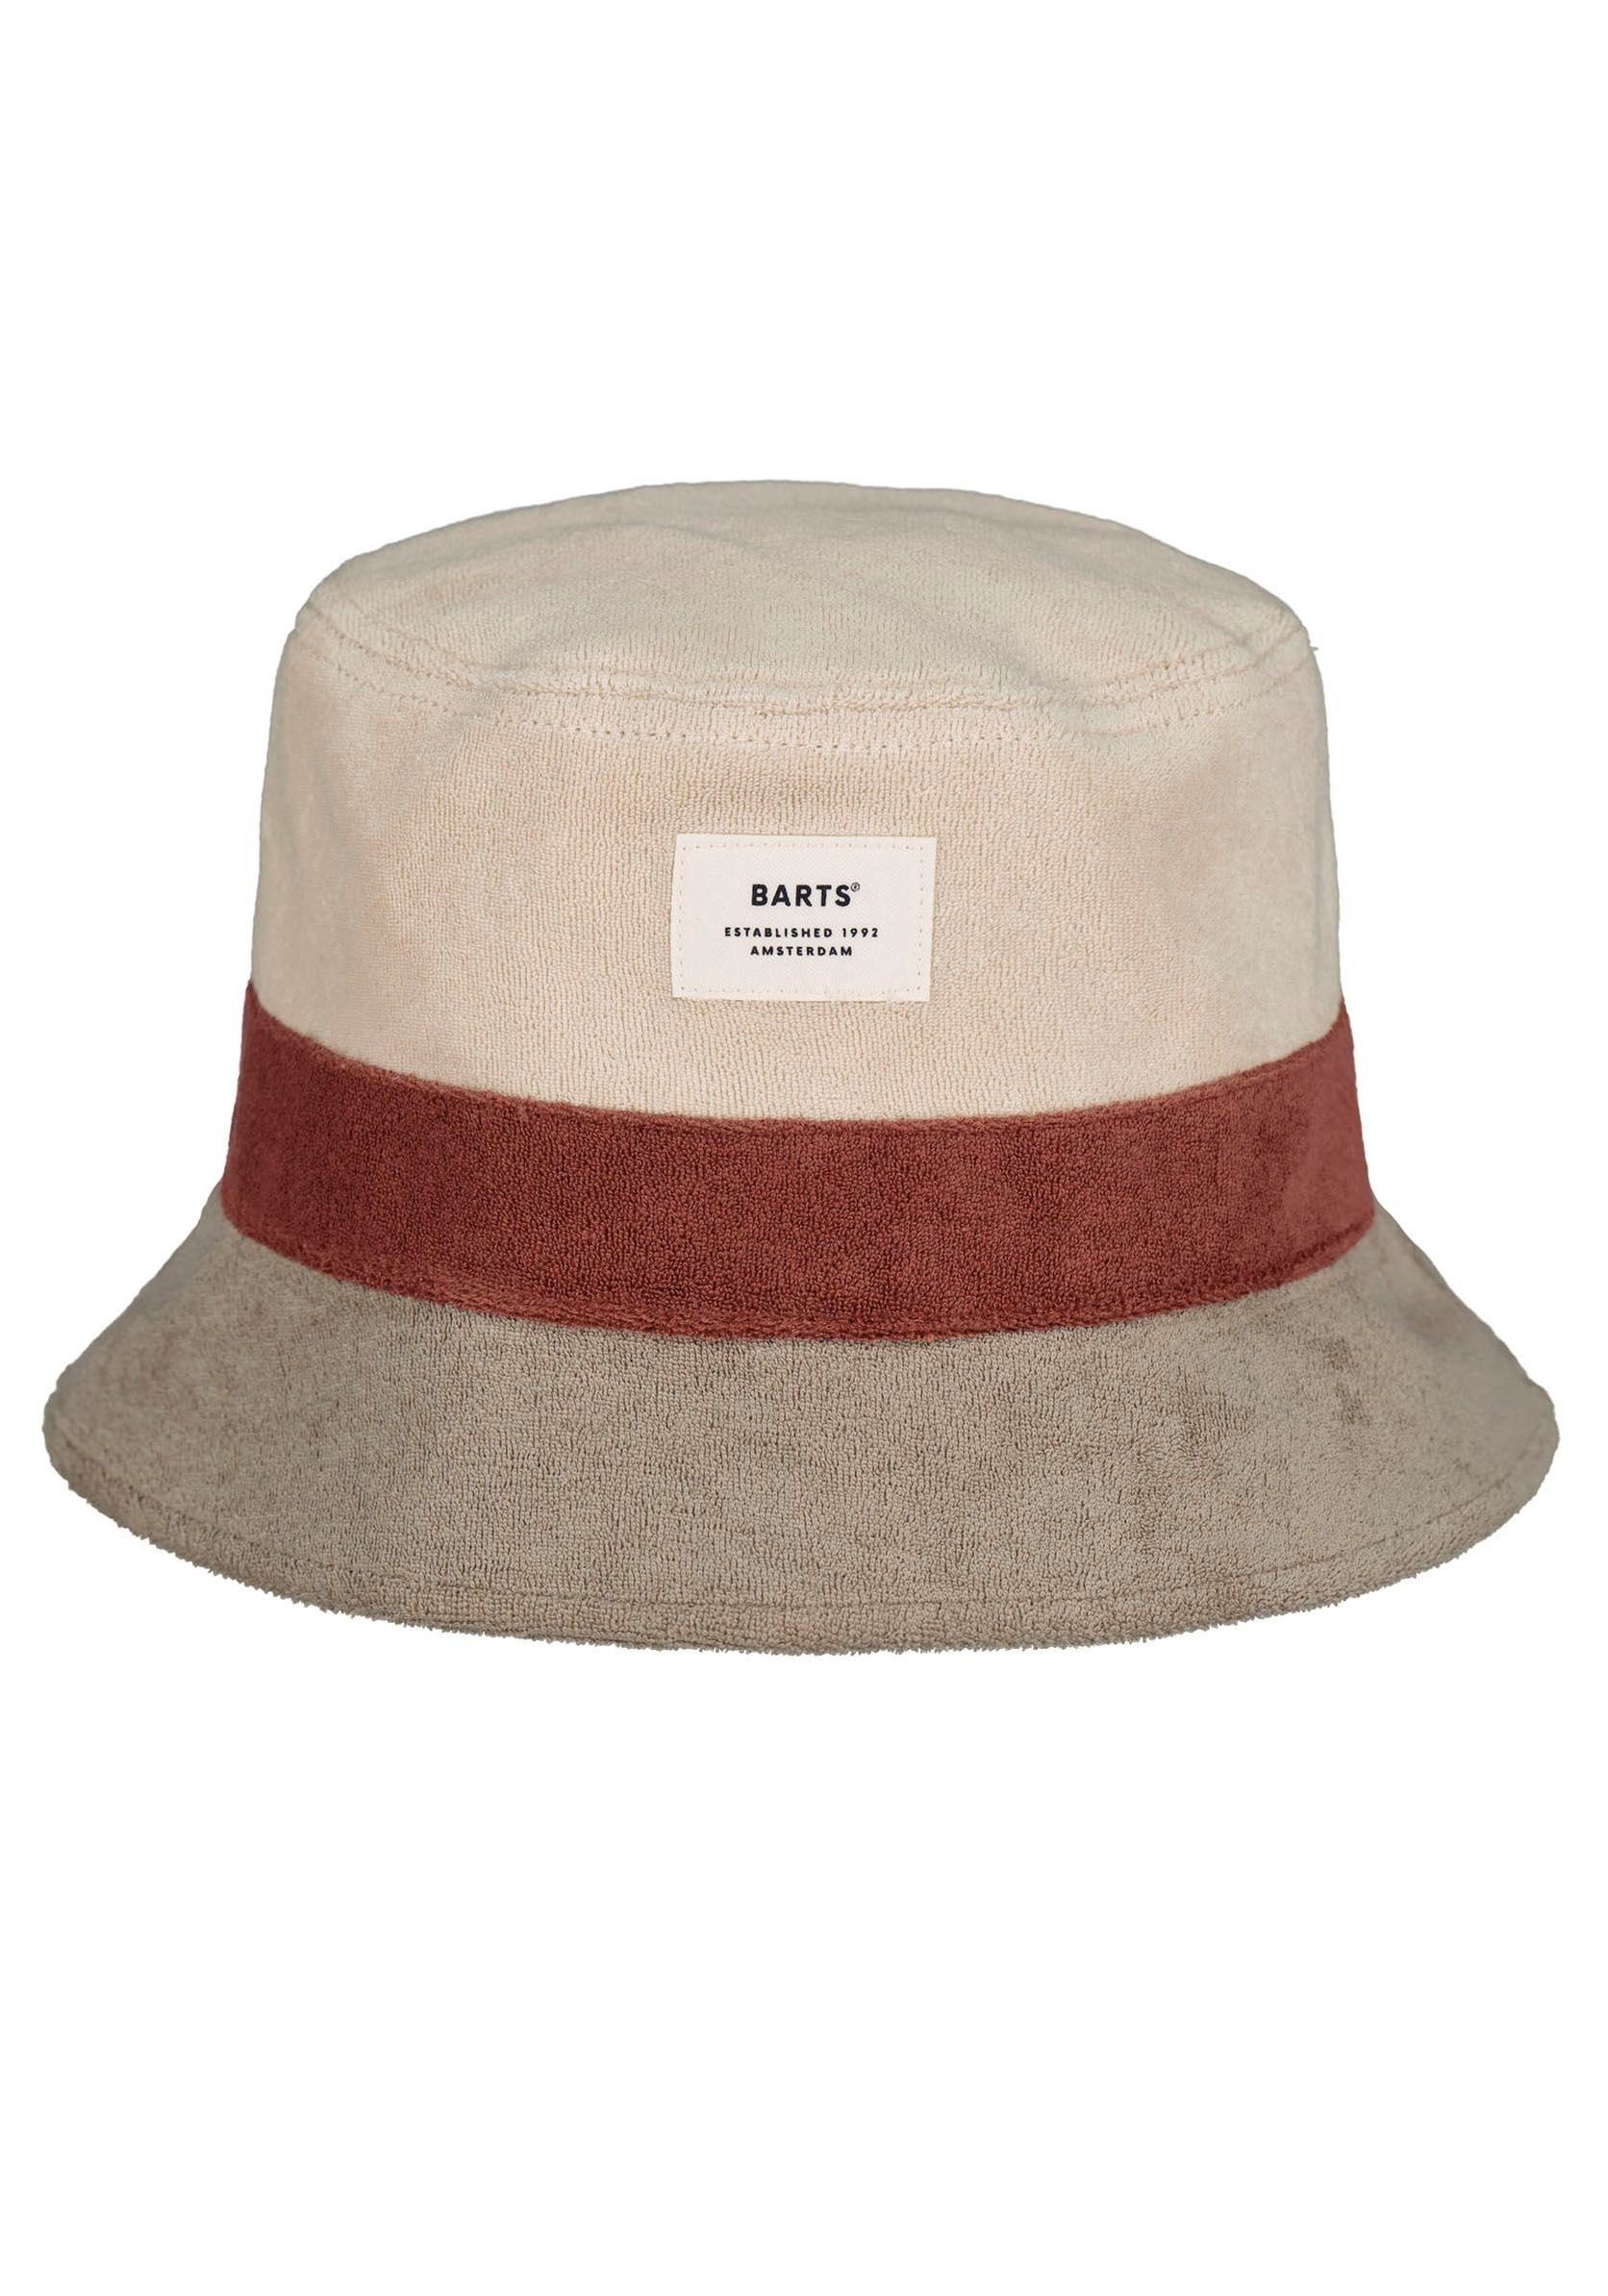 Damen weicher Moderner Barts Hat, Hut Fischerhut Gladiola